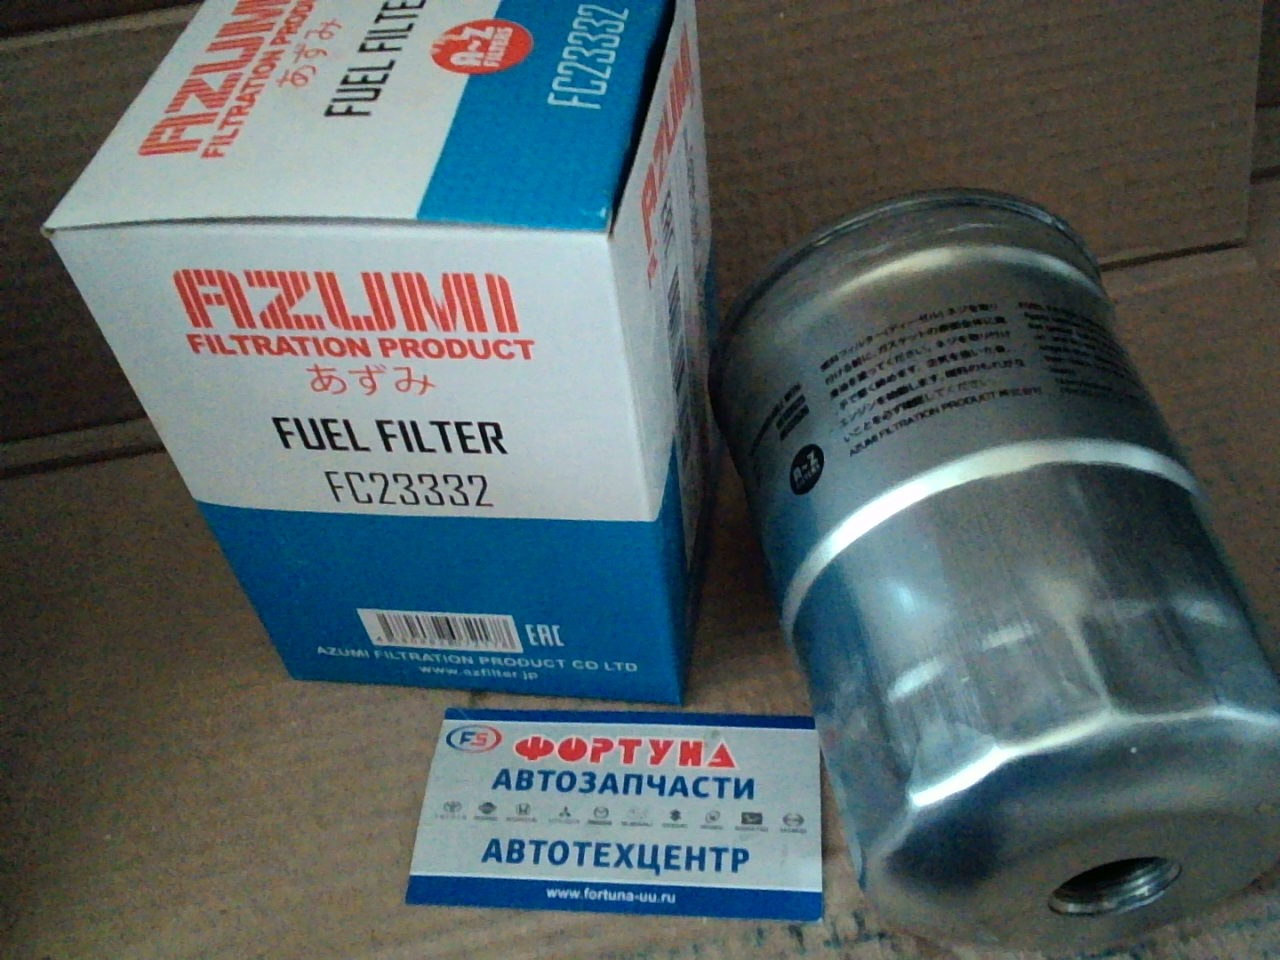 Фильтр Топливный FC-332J (FC23332) Azumi на  